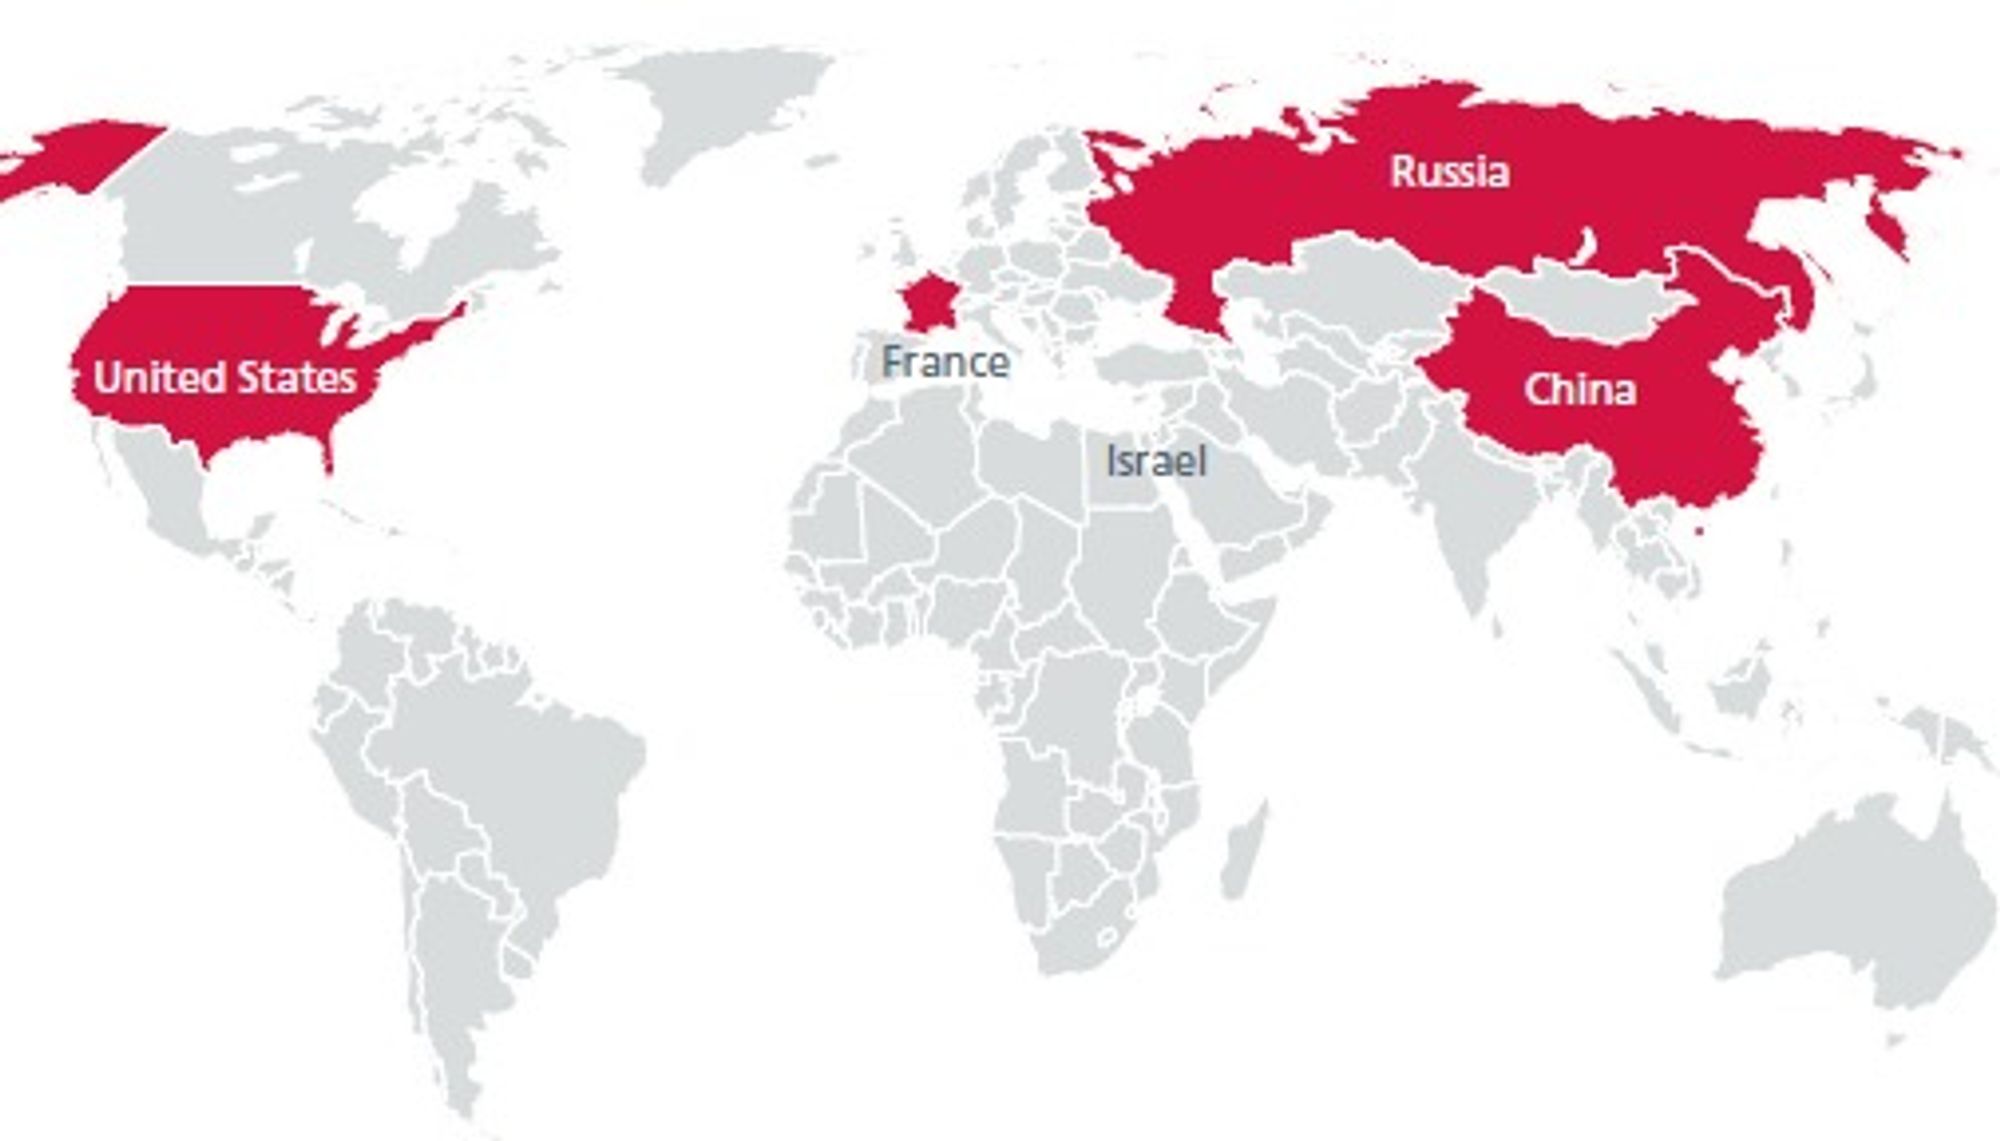 Disse landene er kommet lengst i å utvikle kybervåpen. Eksperter mener det pågår et kybervåpenkappløp.